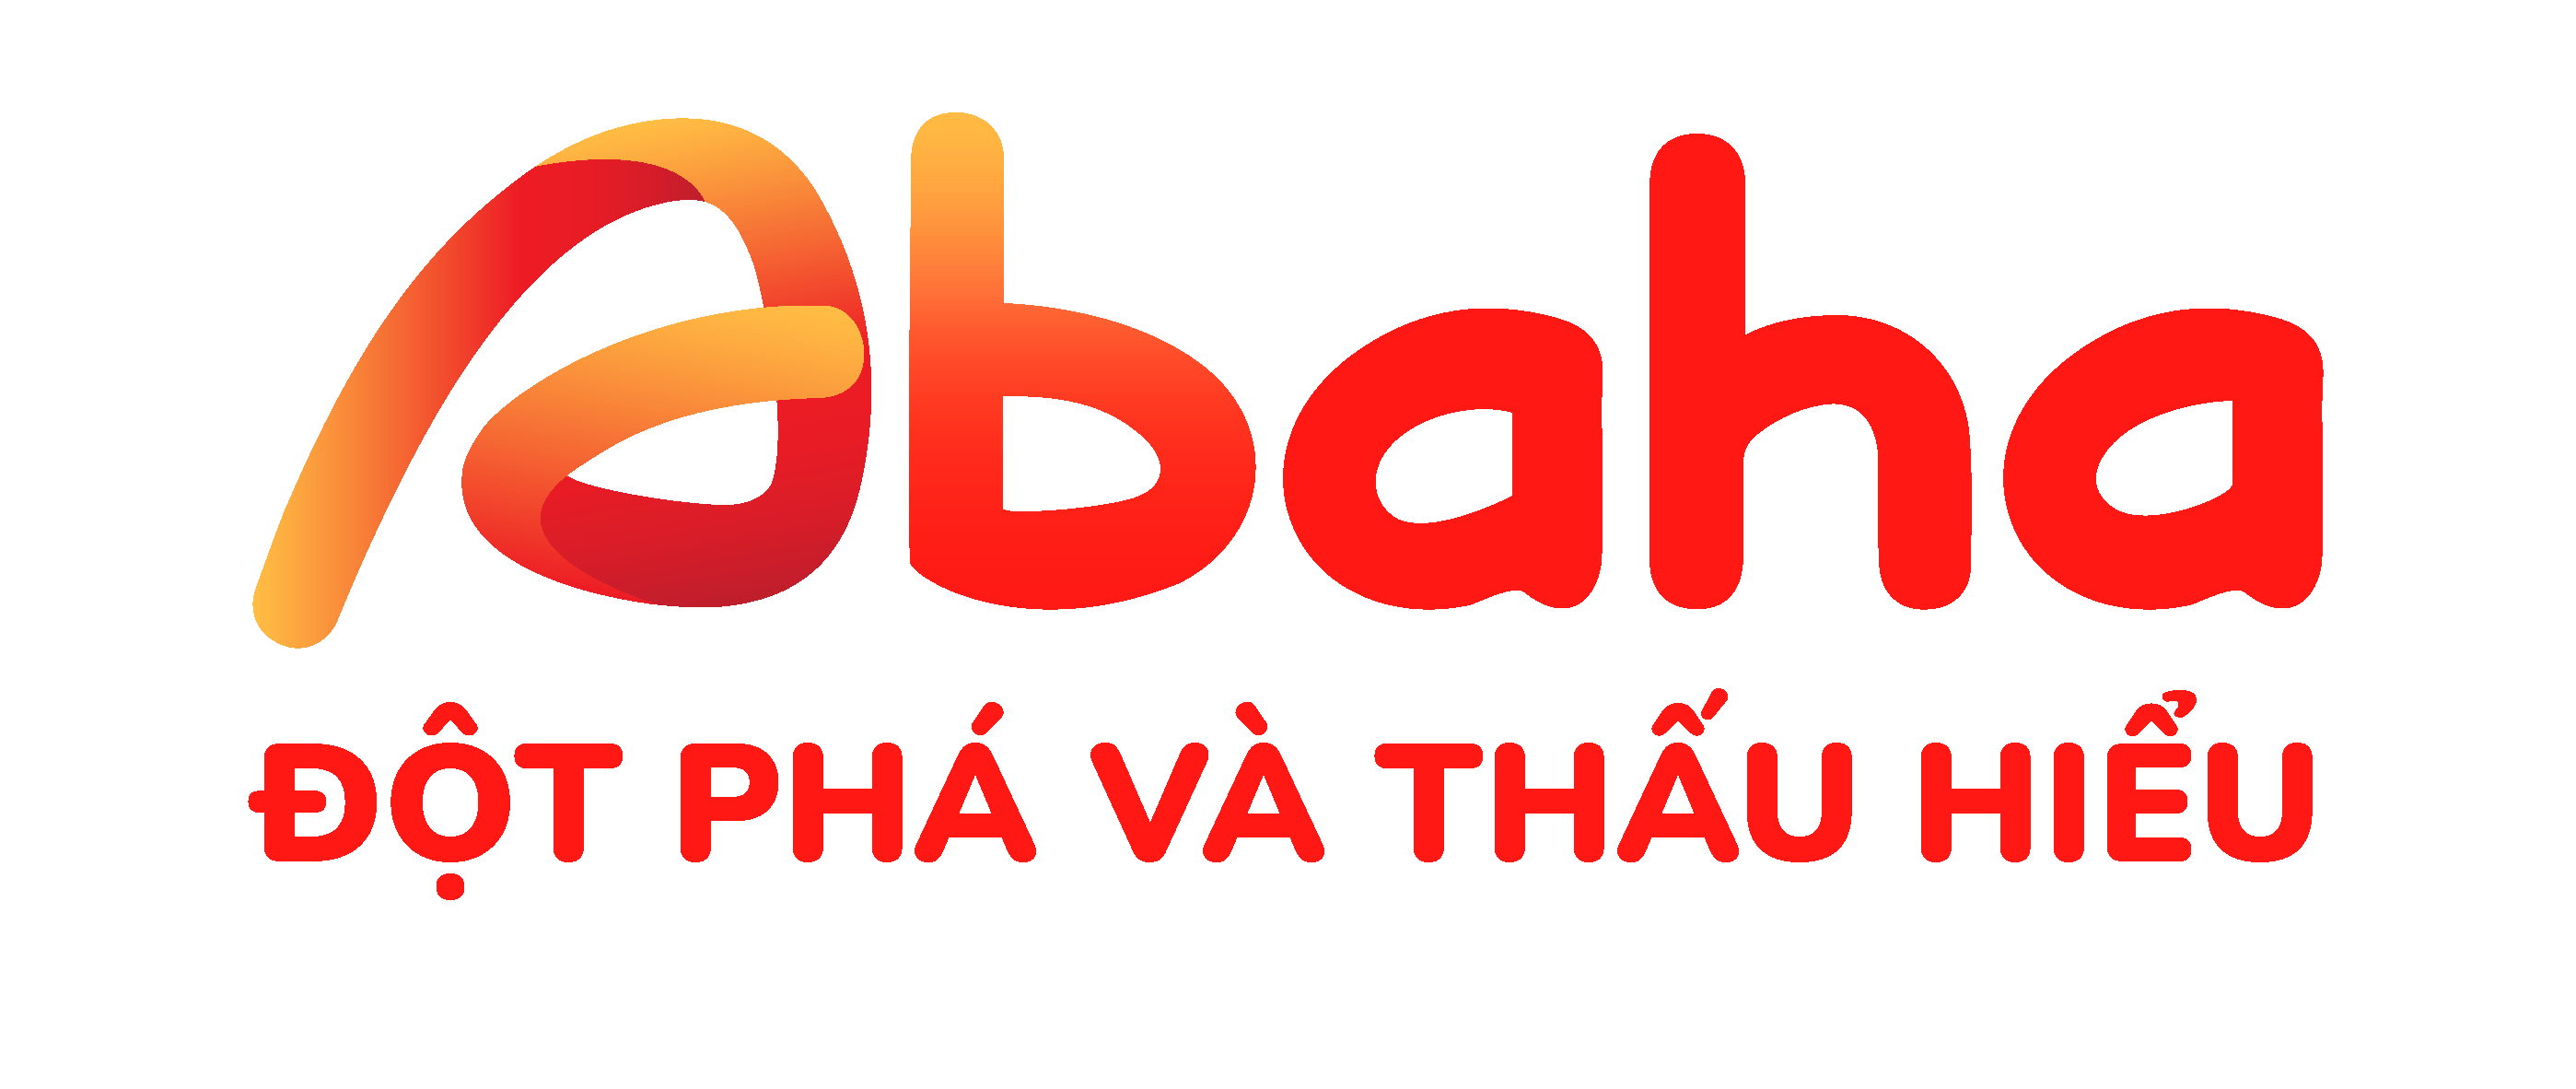 Webinar Chuyển Đổi Số Bán Hàng & Marketing Cho Chuỗi FnB abaha logo